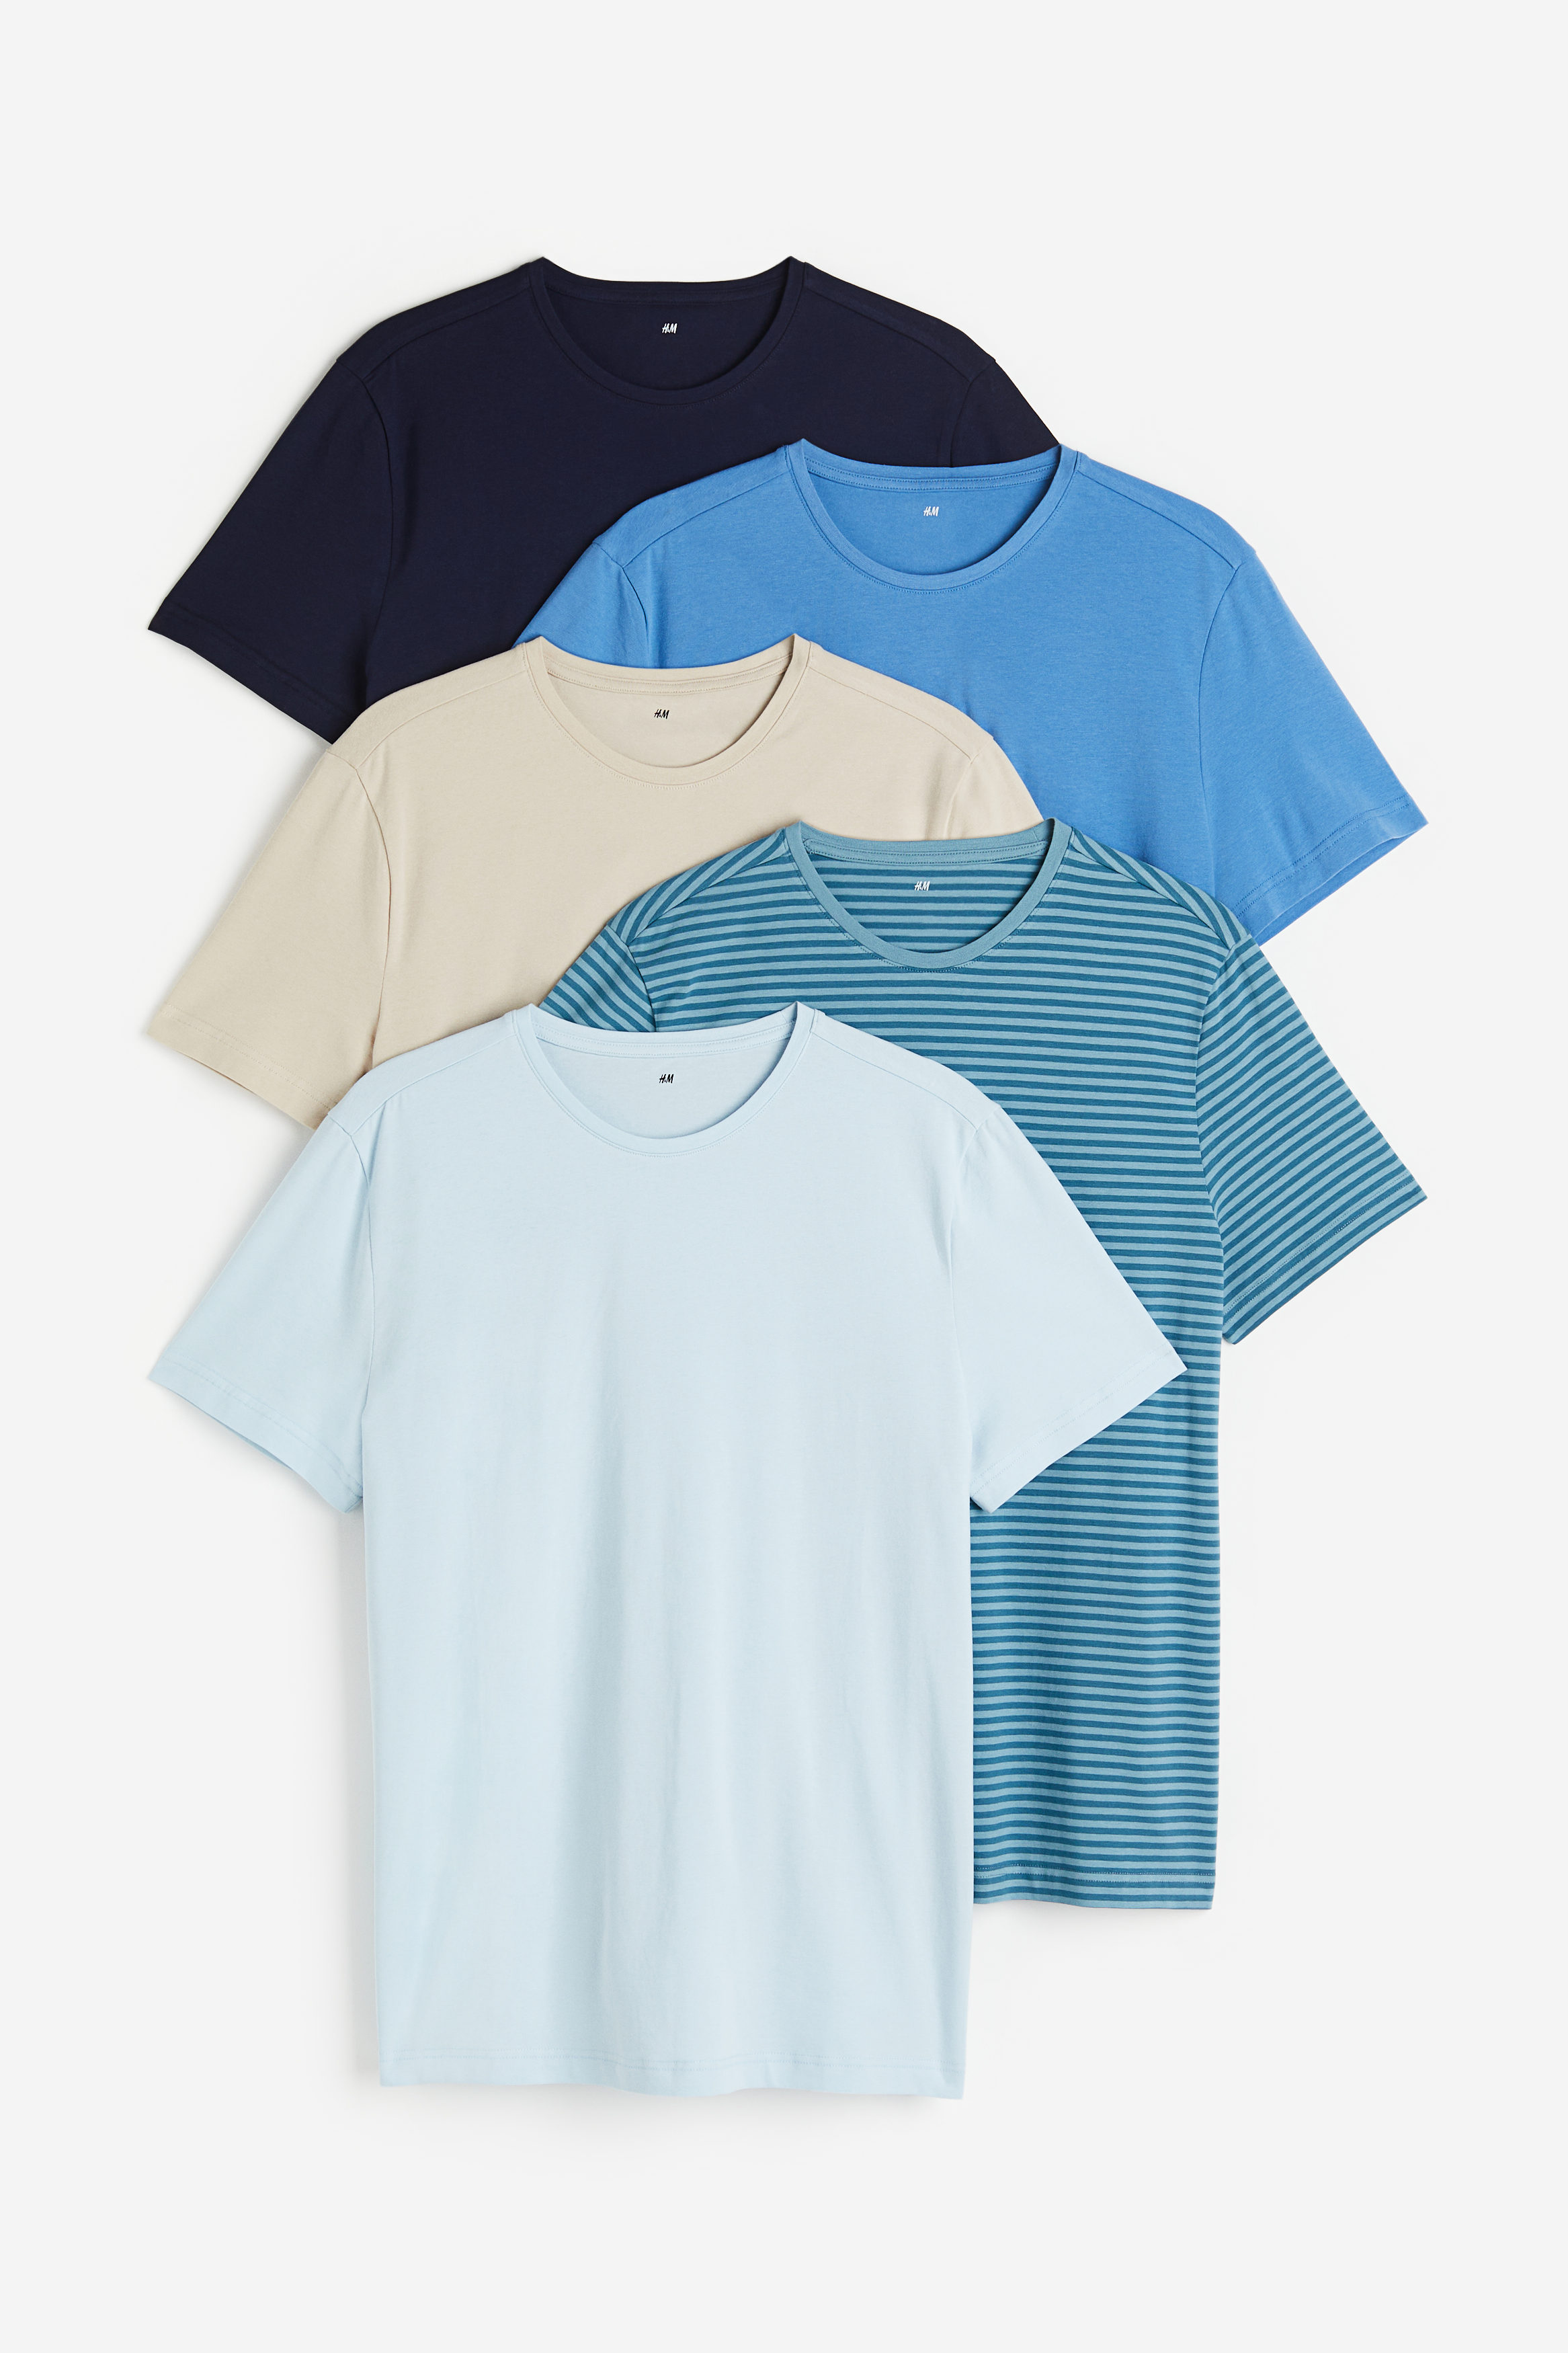 Billede af H&M 5-pak T-shirt Slim Fit Lyseblå/lys Beige, T-shirts. Farve: Light blue/light beige I størrelse L